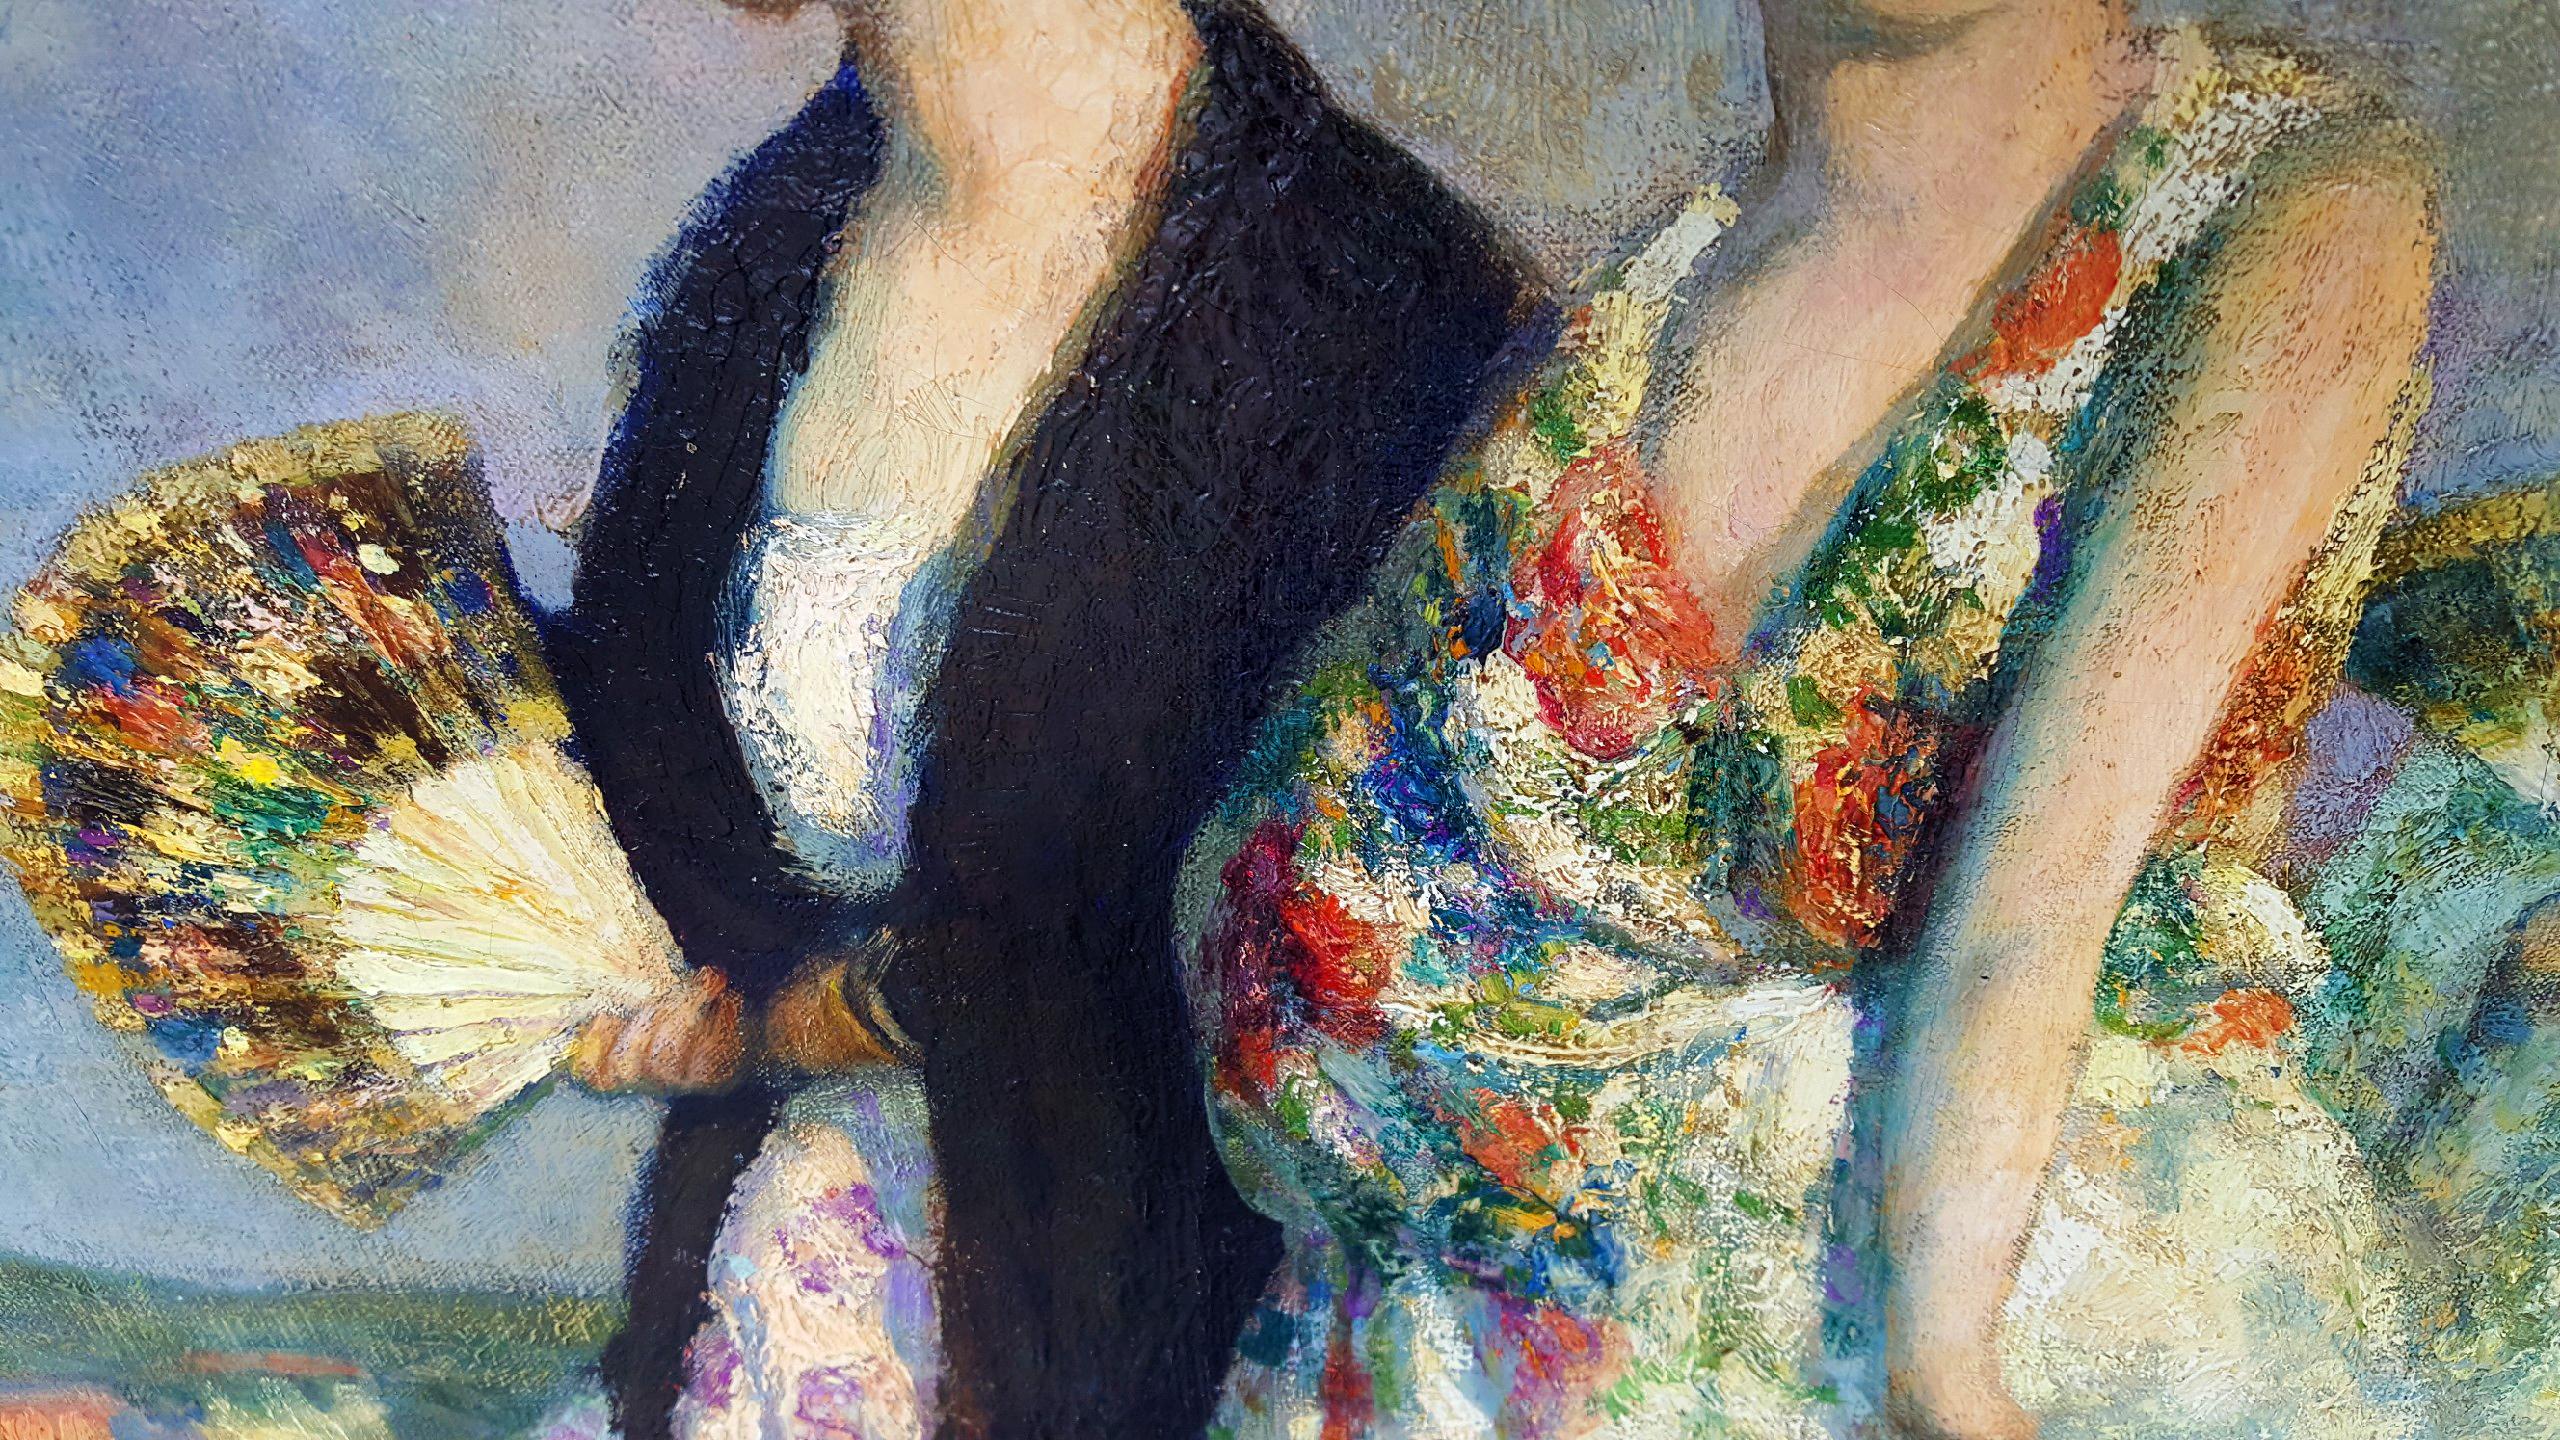  F. Luis Mora war das erste hispanische Mitglied der National Academy of Design.   Spanisches Souvenir - mantilla, peineta, von Francis Luis Mora ist ein Gemälde von schönen spanischen Frauen in traditioneller Kleidung mit ihrem Gefolge. Es handelt